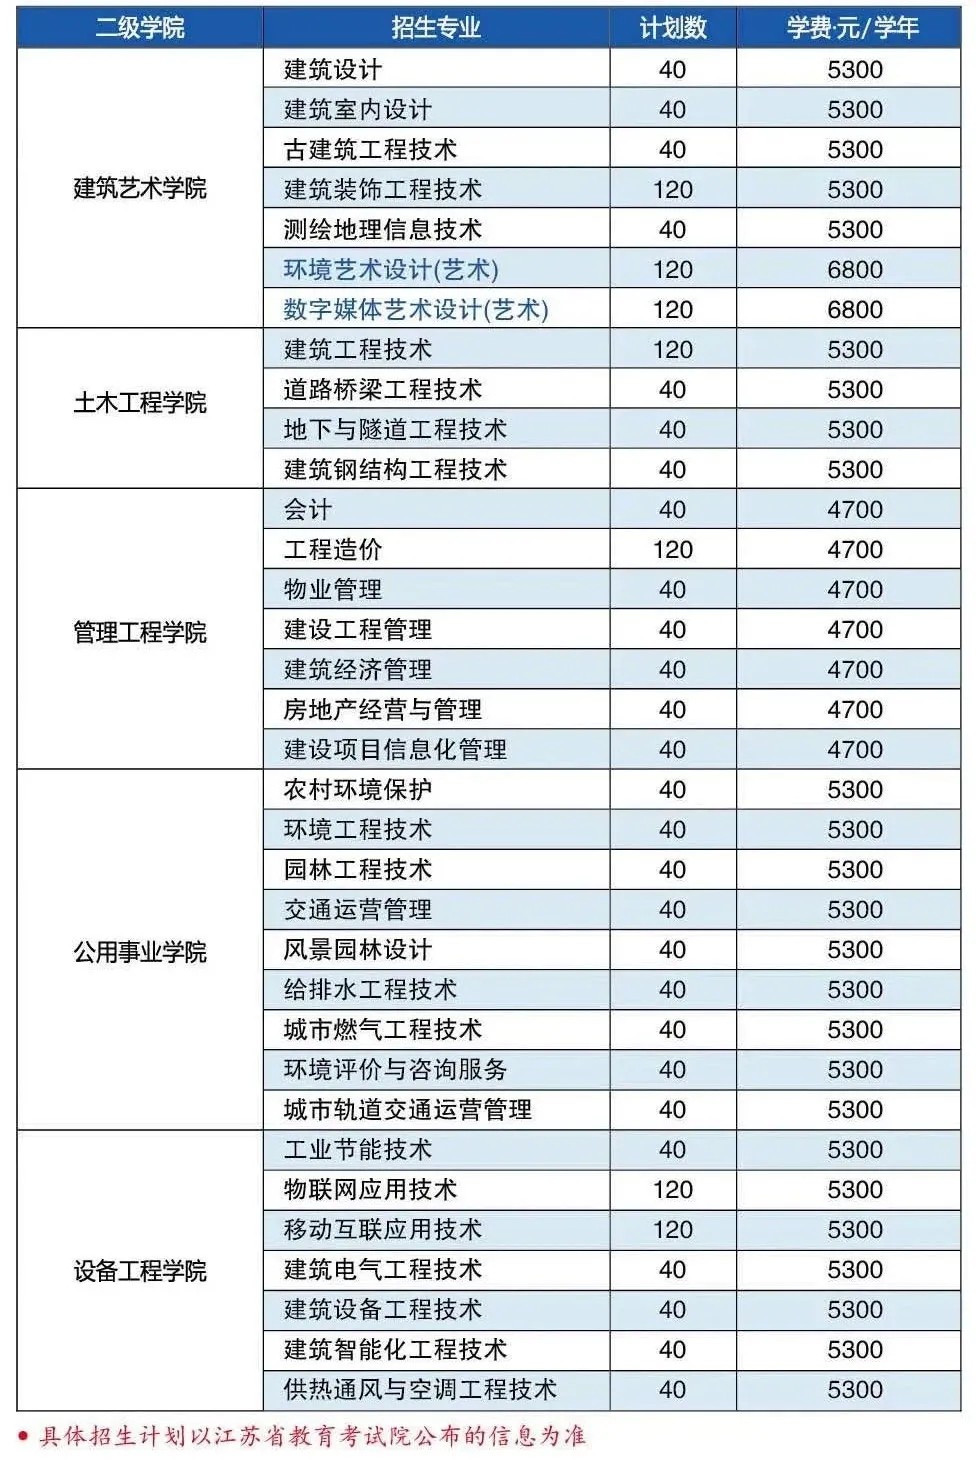 江苏城乡建设职业学院2021年提前招生专业及计划